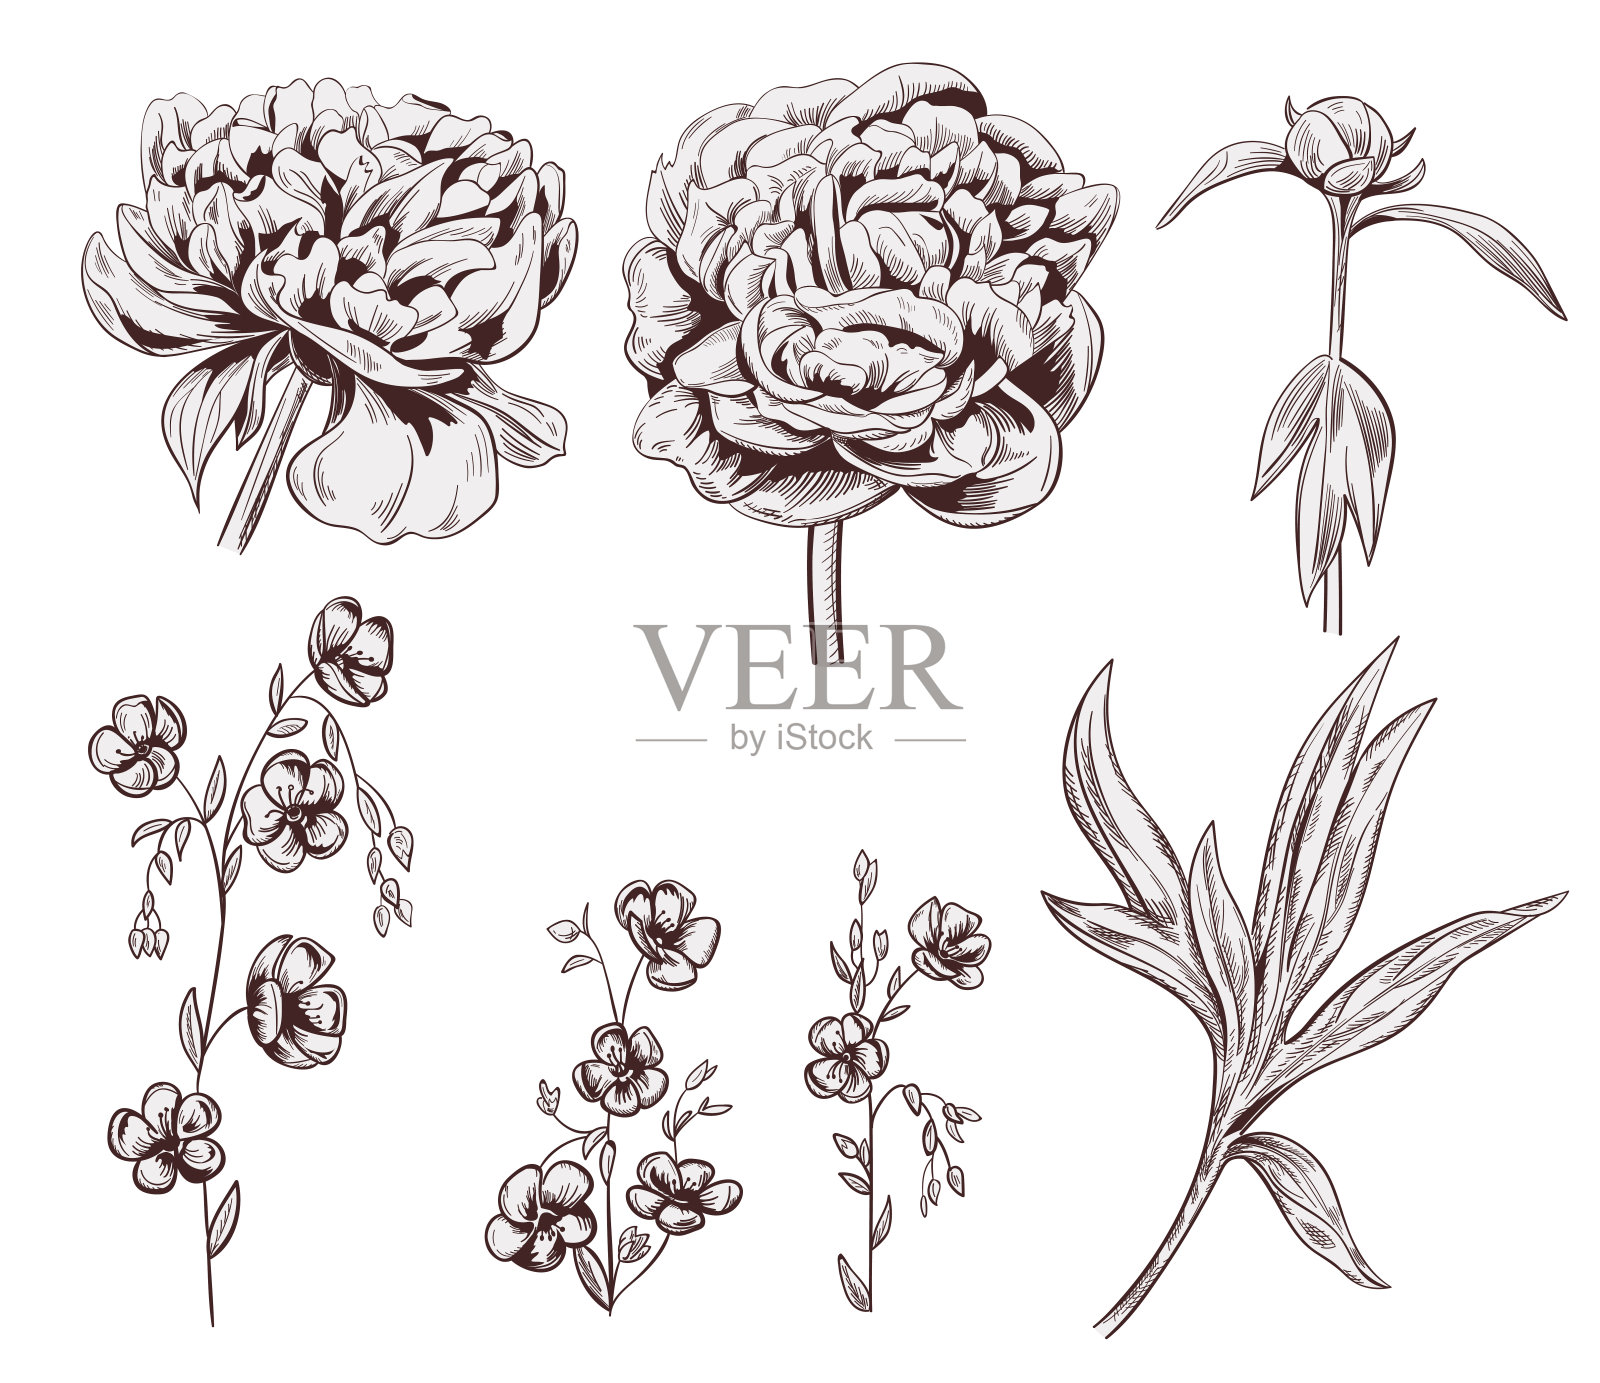 一套牡丹、亚麻花，花为棕色单色，花蕾、茎、叶在白色底色上。植物插图设计，手工绘制雕刻复古风格，蚀刻，邮票压印，矢量设计元素图片